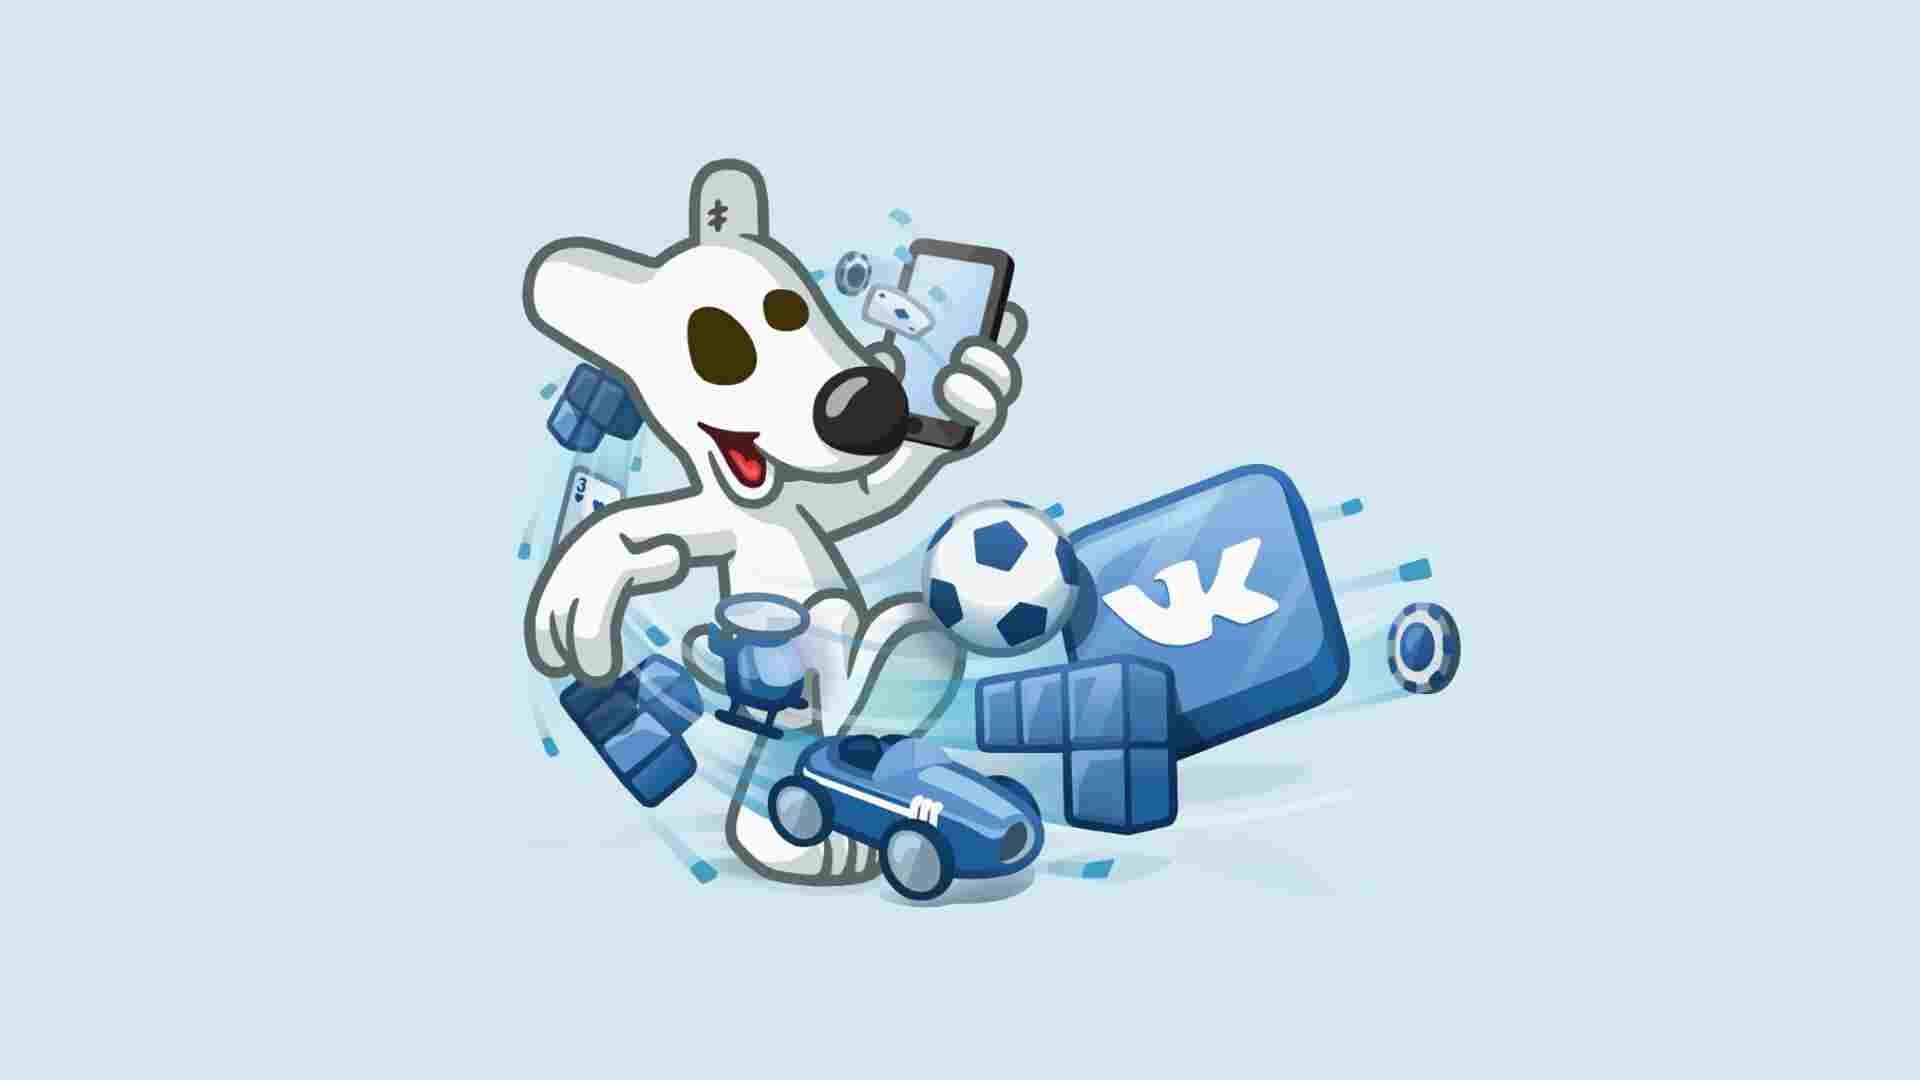 ВКонтакте начинают новую эпоху социальных развлечений?